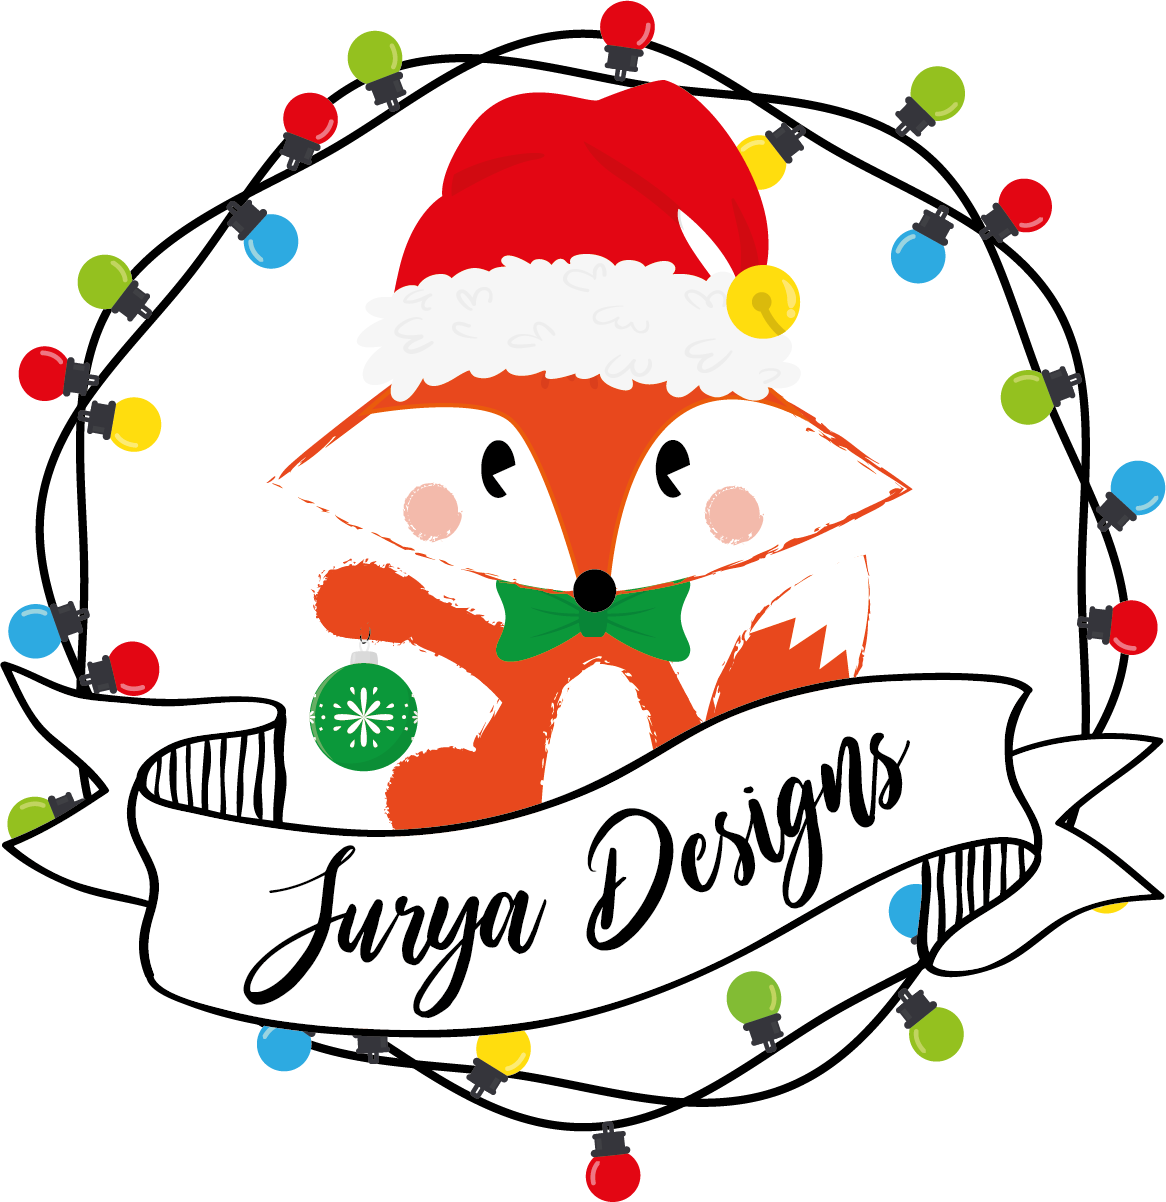 Juf Surya Designs